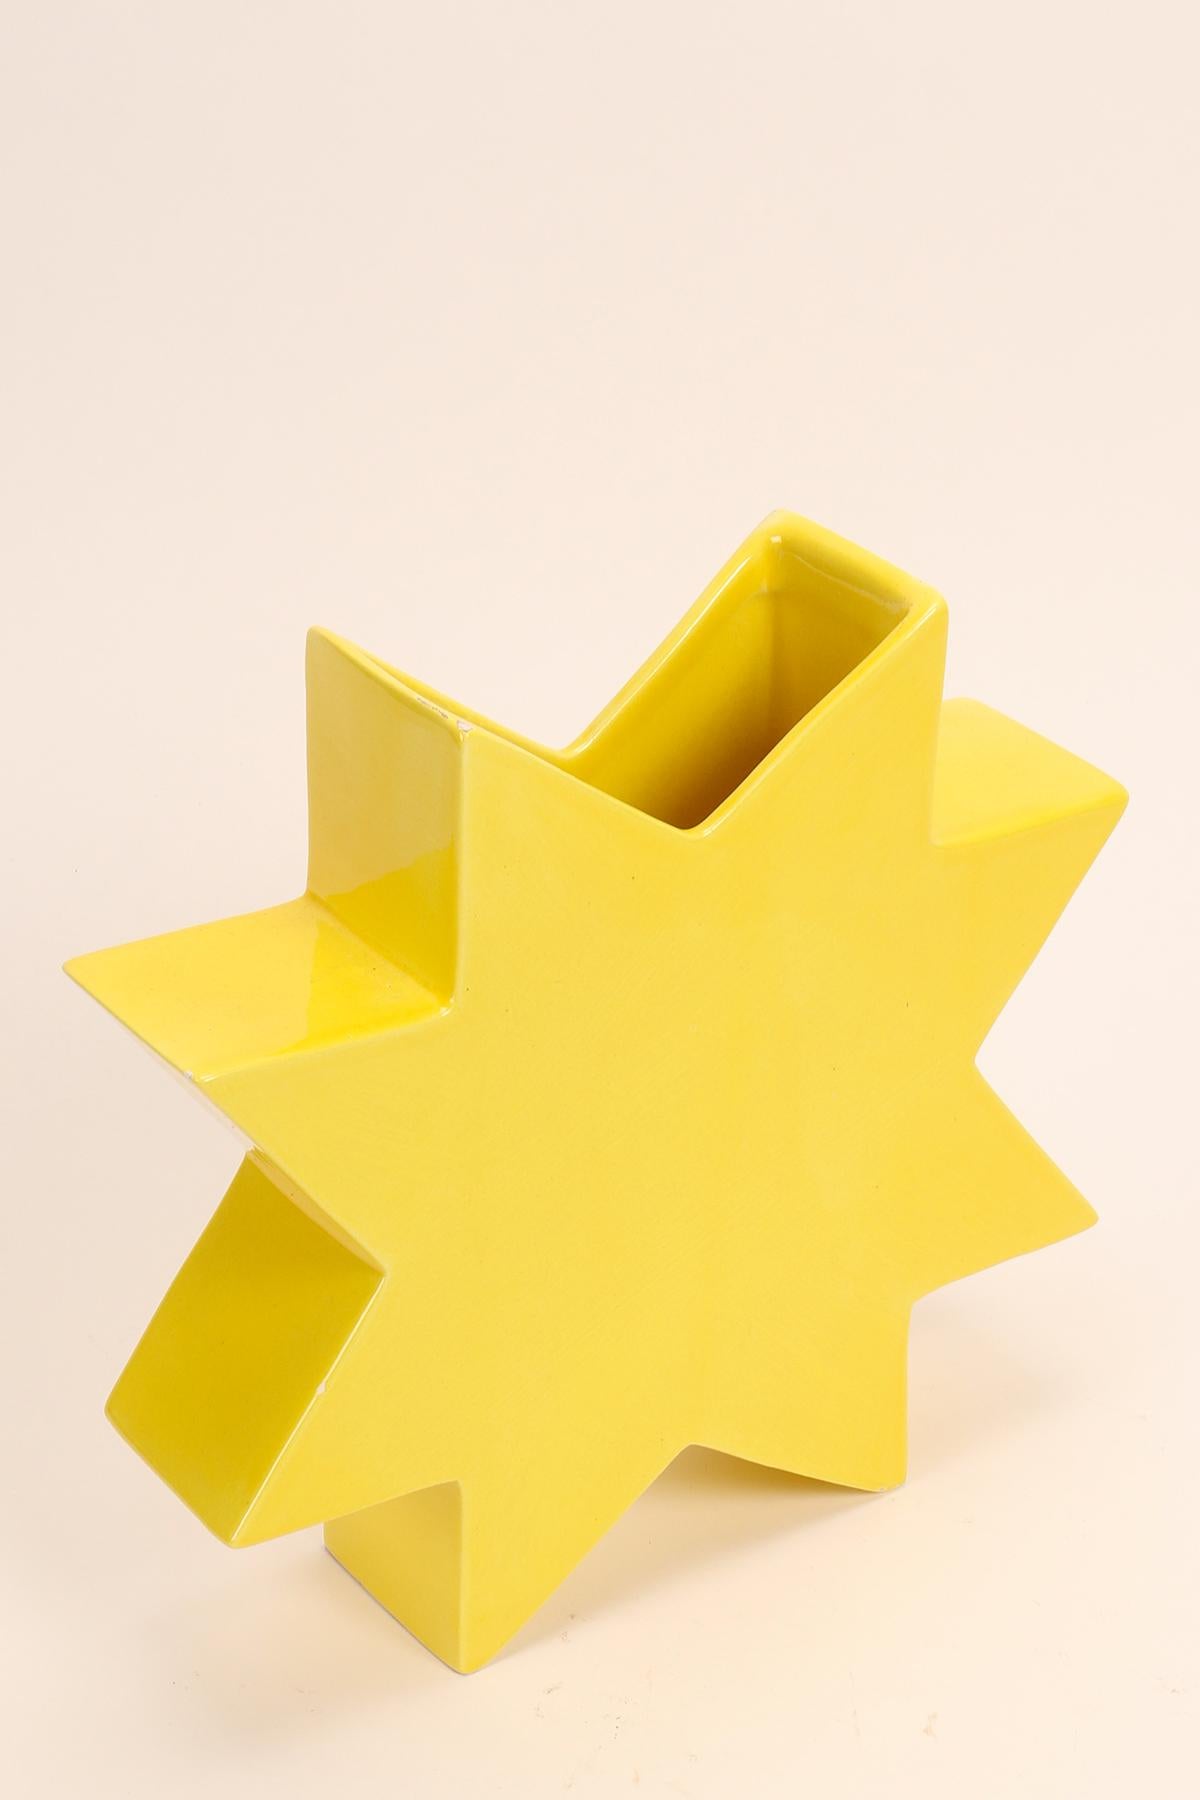 Bemalte Keramikvase Memphis Milano, Csillag von Luciano Florio Paccagnella, gelbe Farbe.
Er war ein wichtiges Mitglied der Gruppe, als er seine Serie von einzigartigen handgefertigten Vasen schuf. Florio Paccagnella studierte Werbegrafik am Liceo